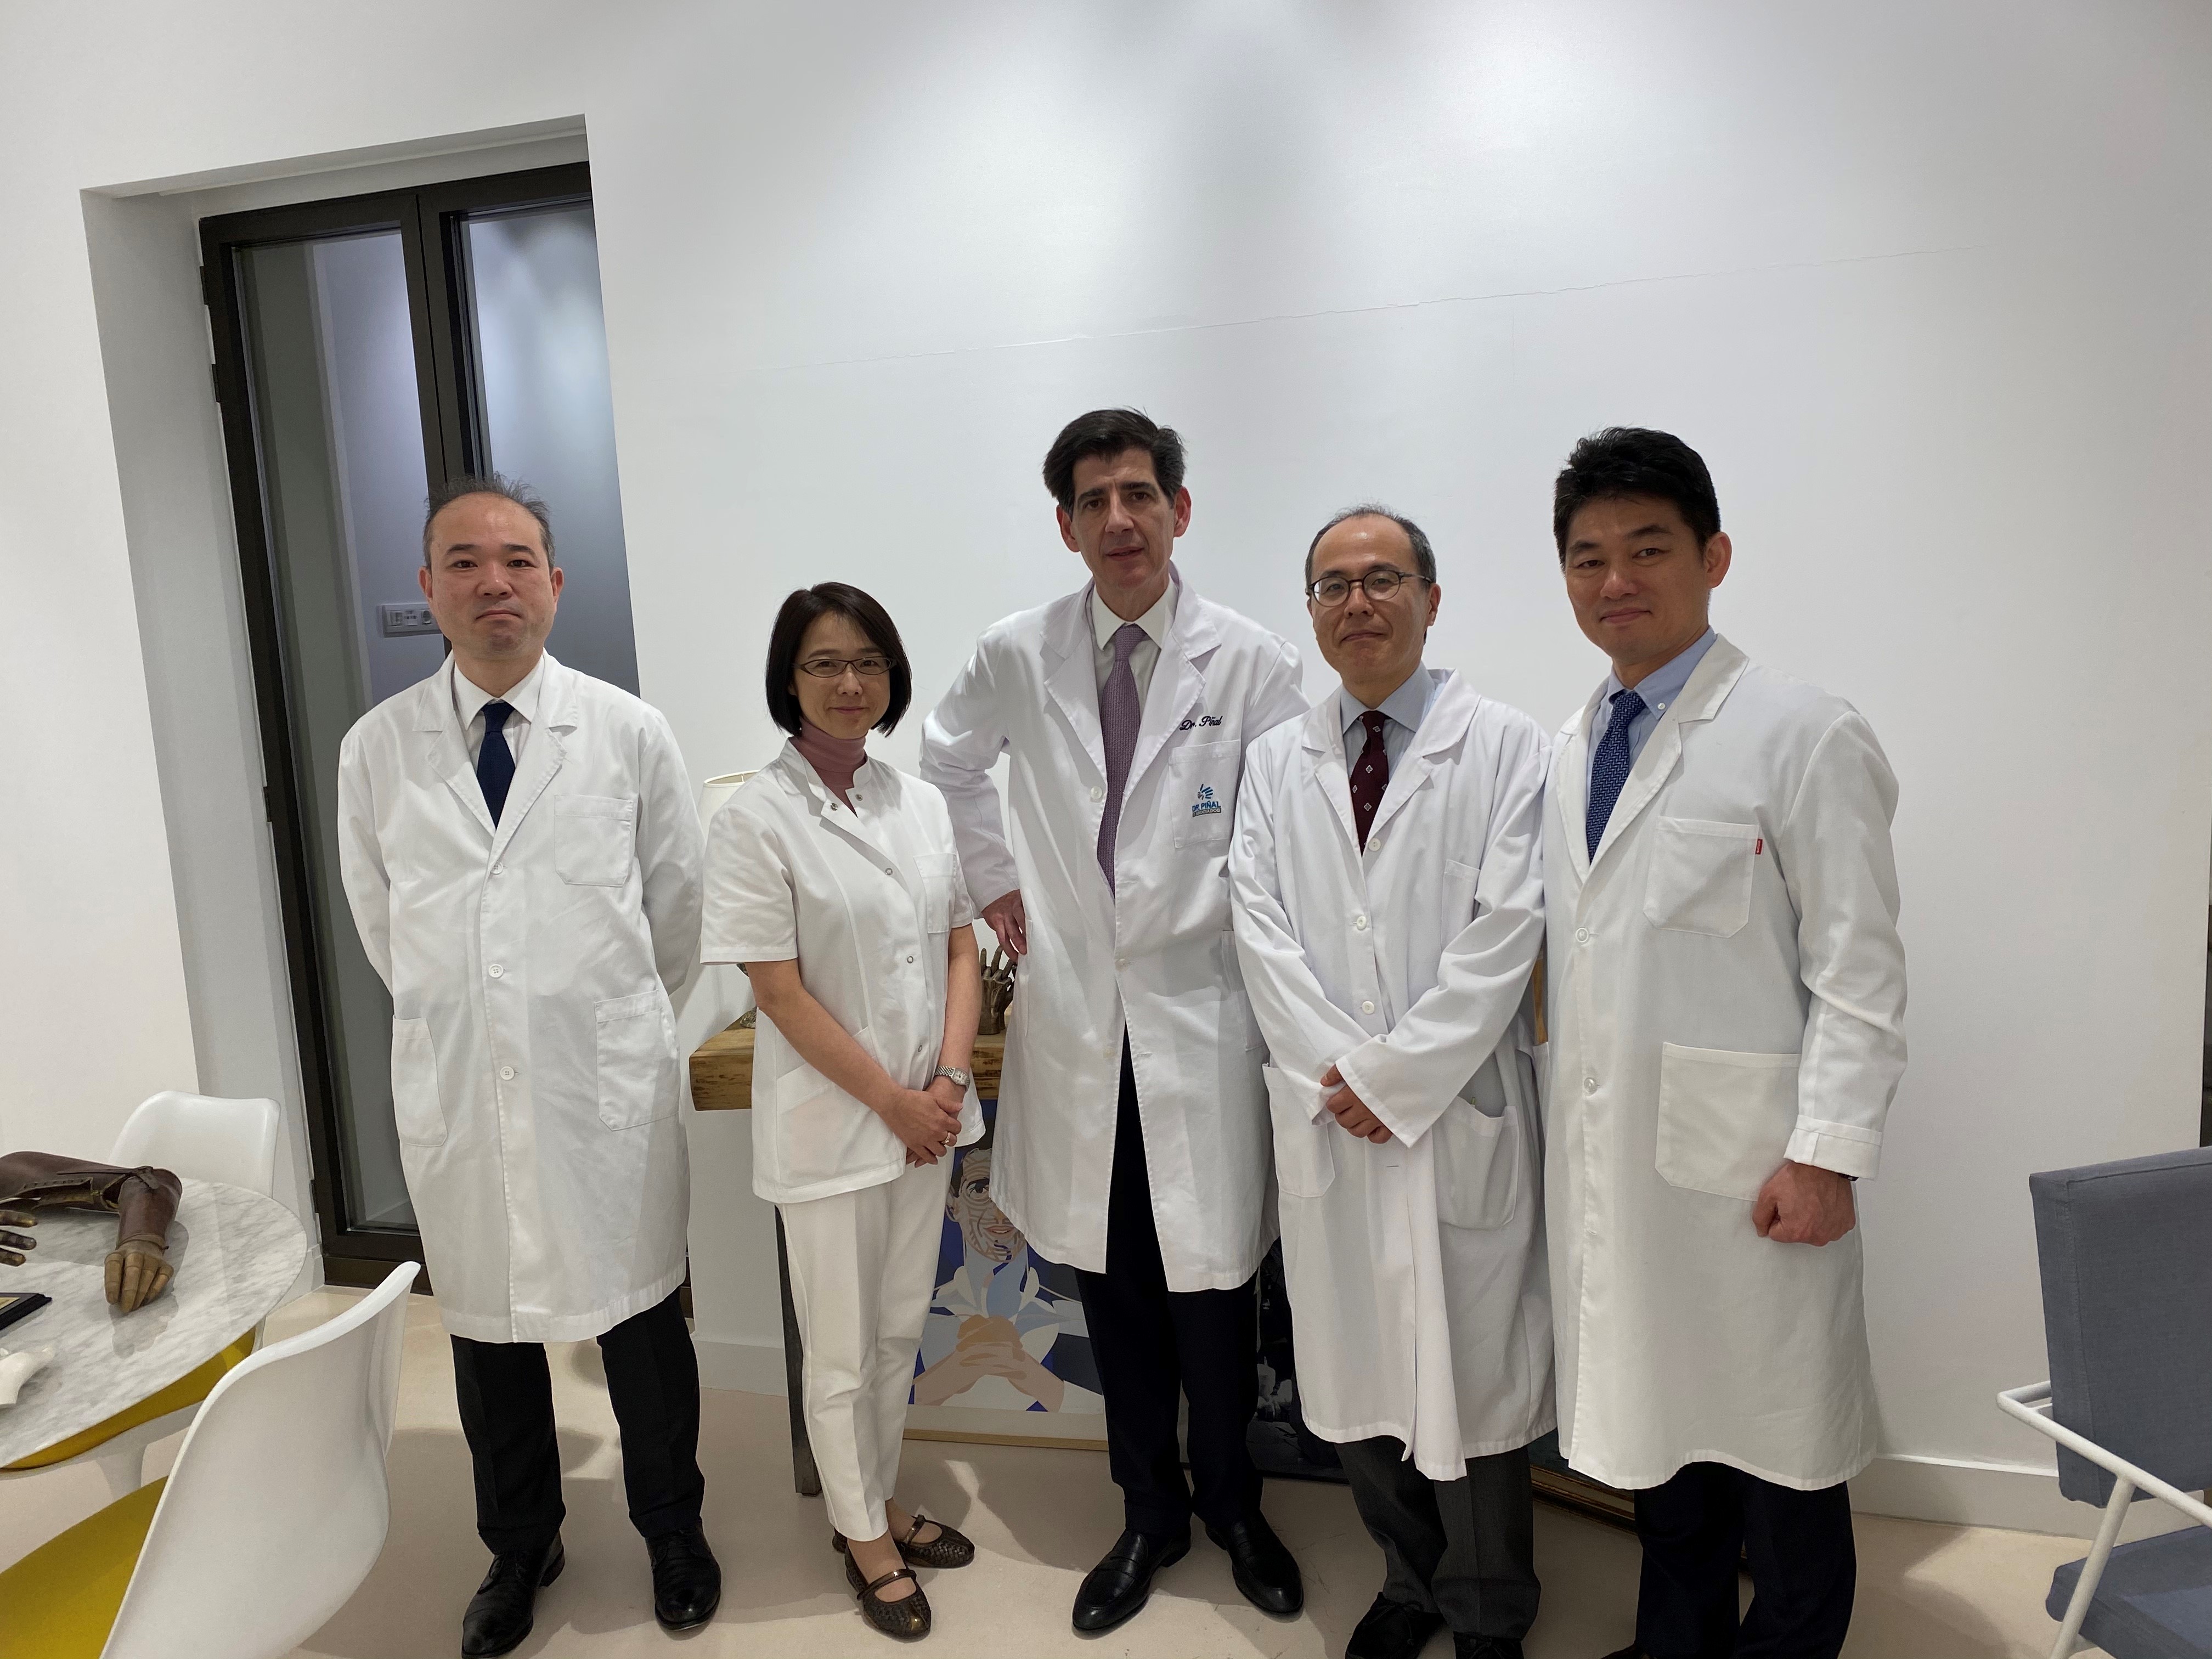 Dr Piñal with the surgeons Matsumoto, Ishiko, Yamawaki and Ikeguchi